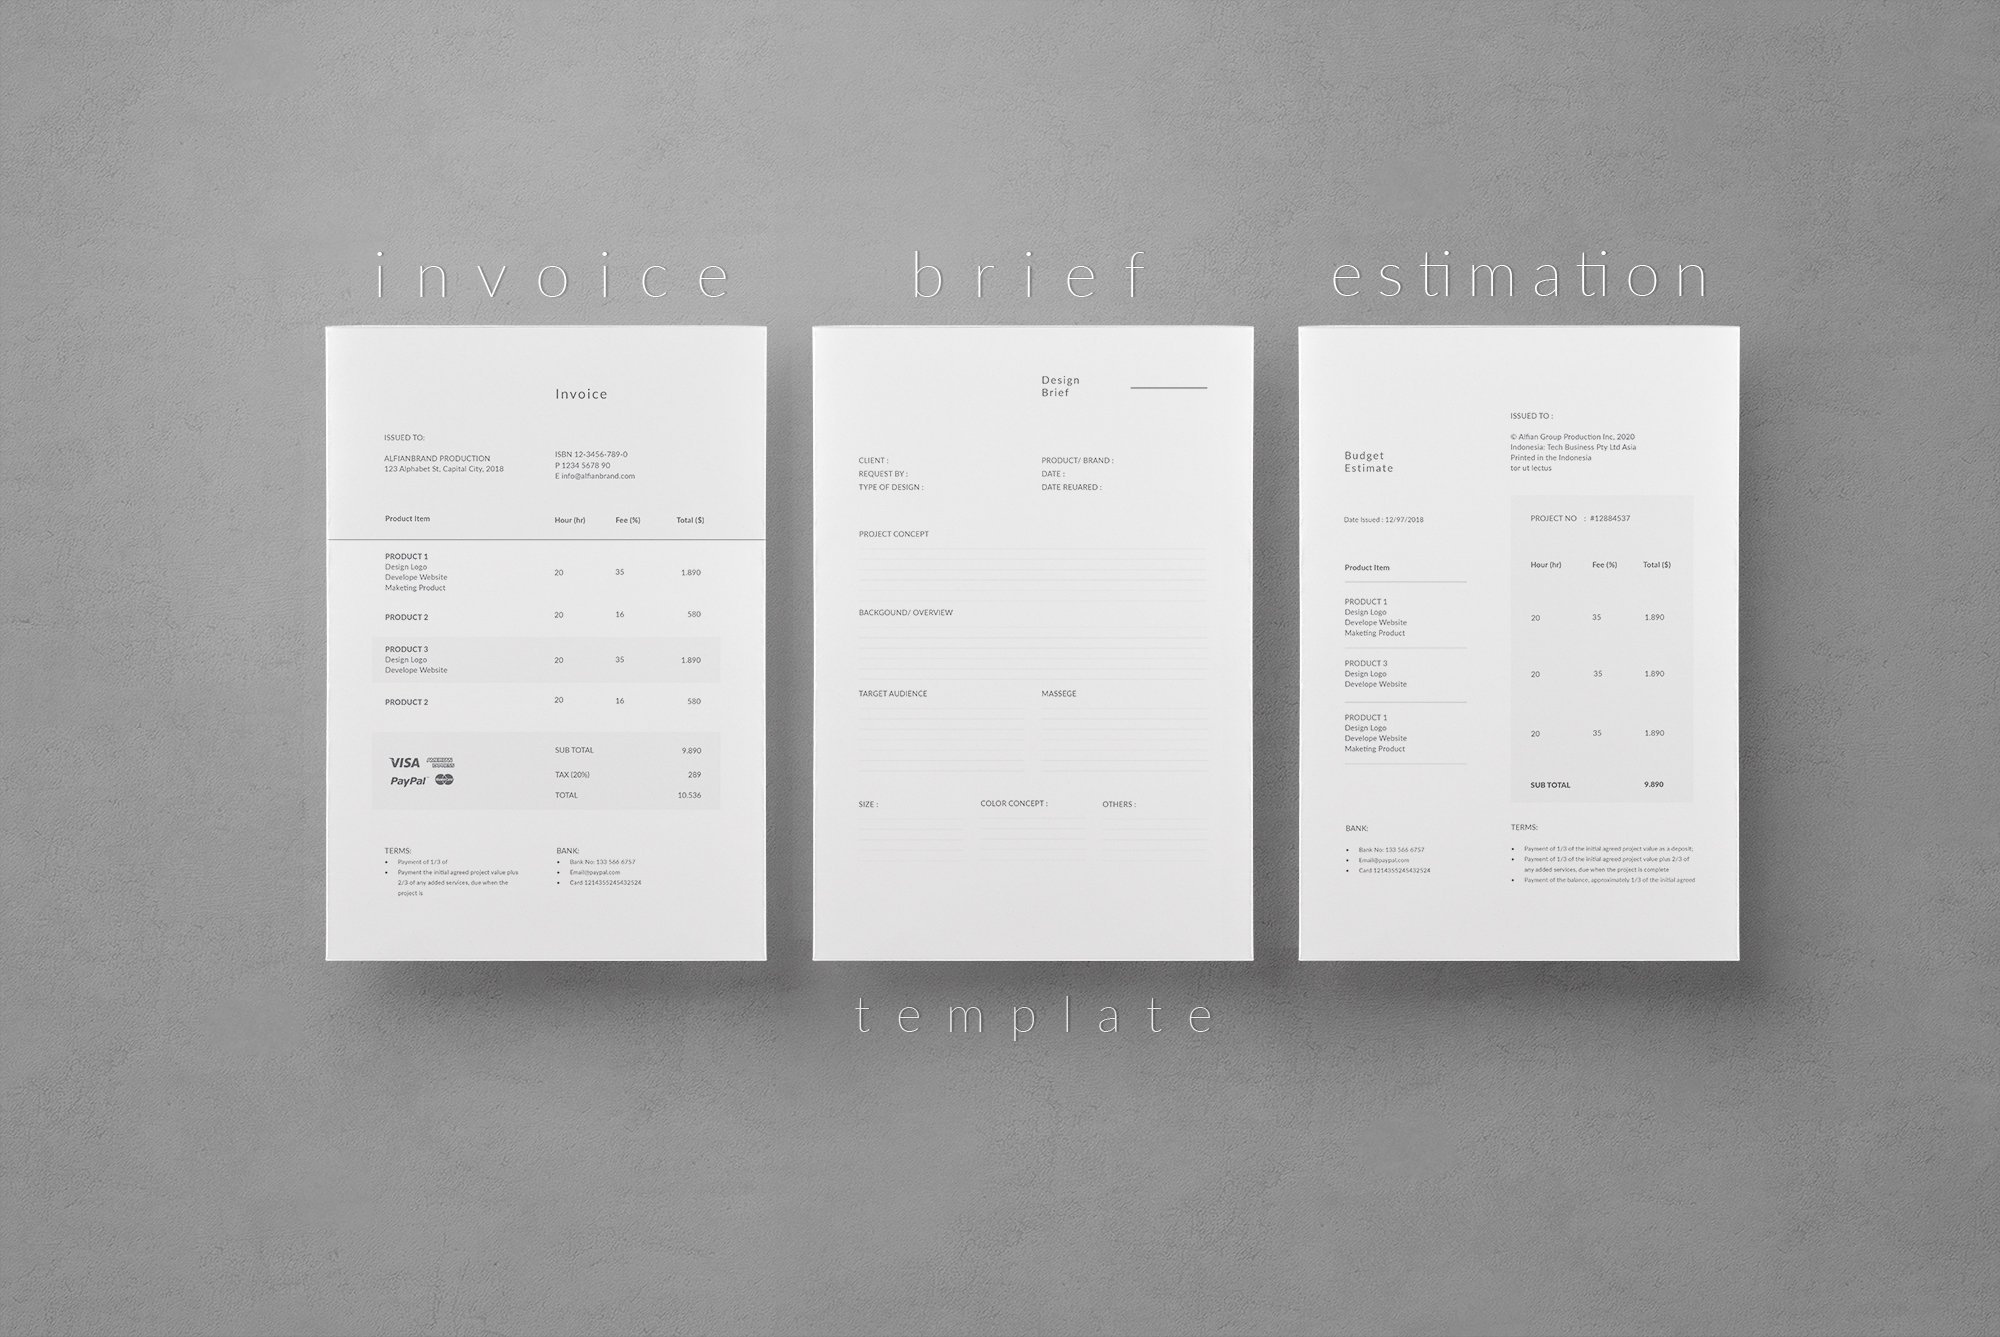 Invoice - Brief - Estimation cover image.